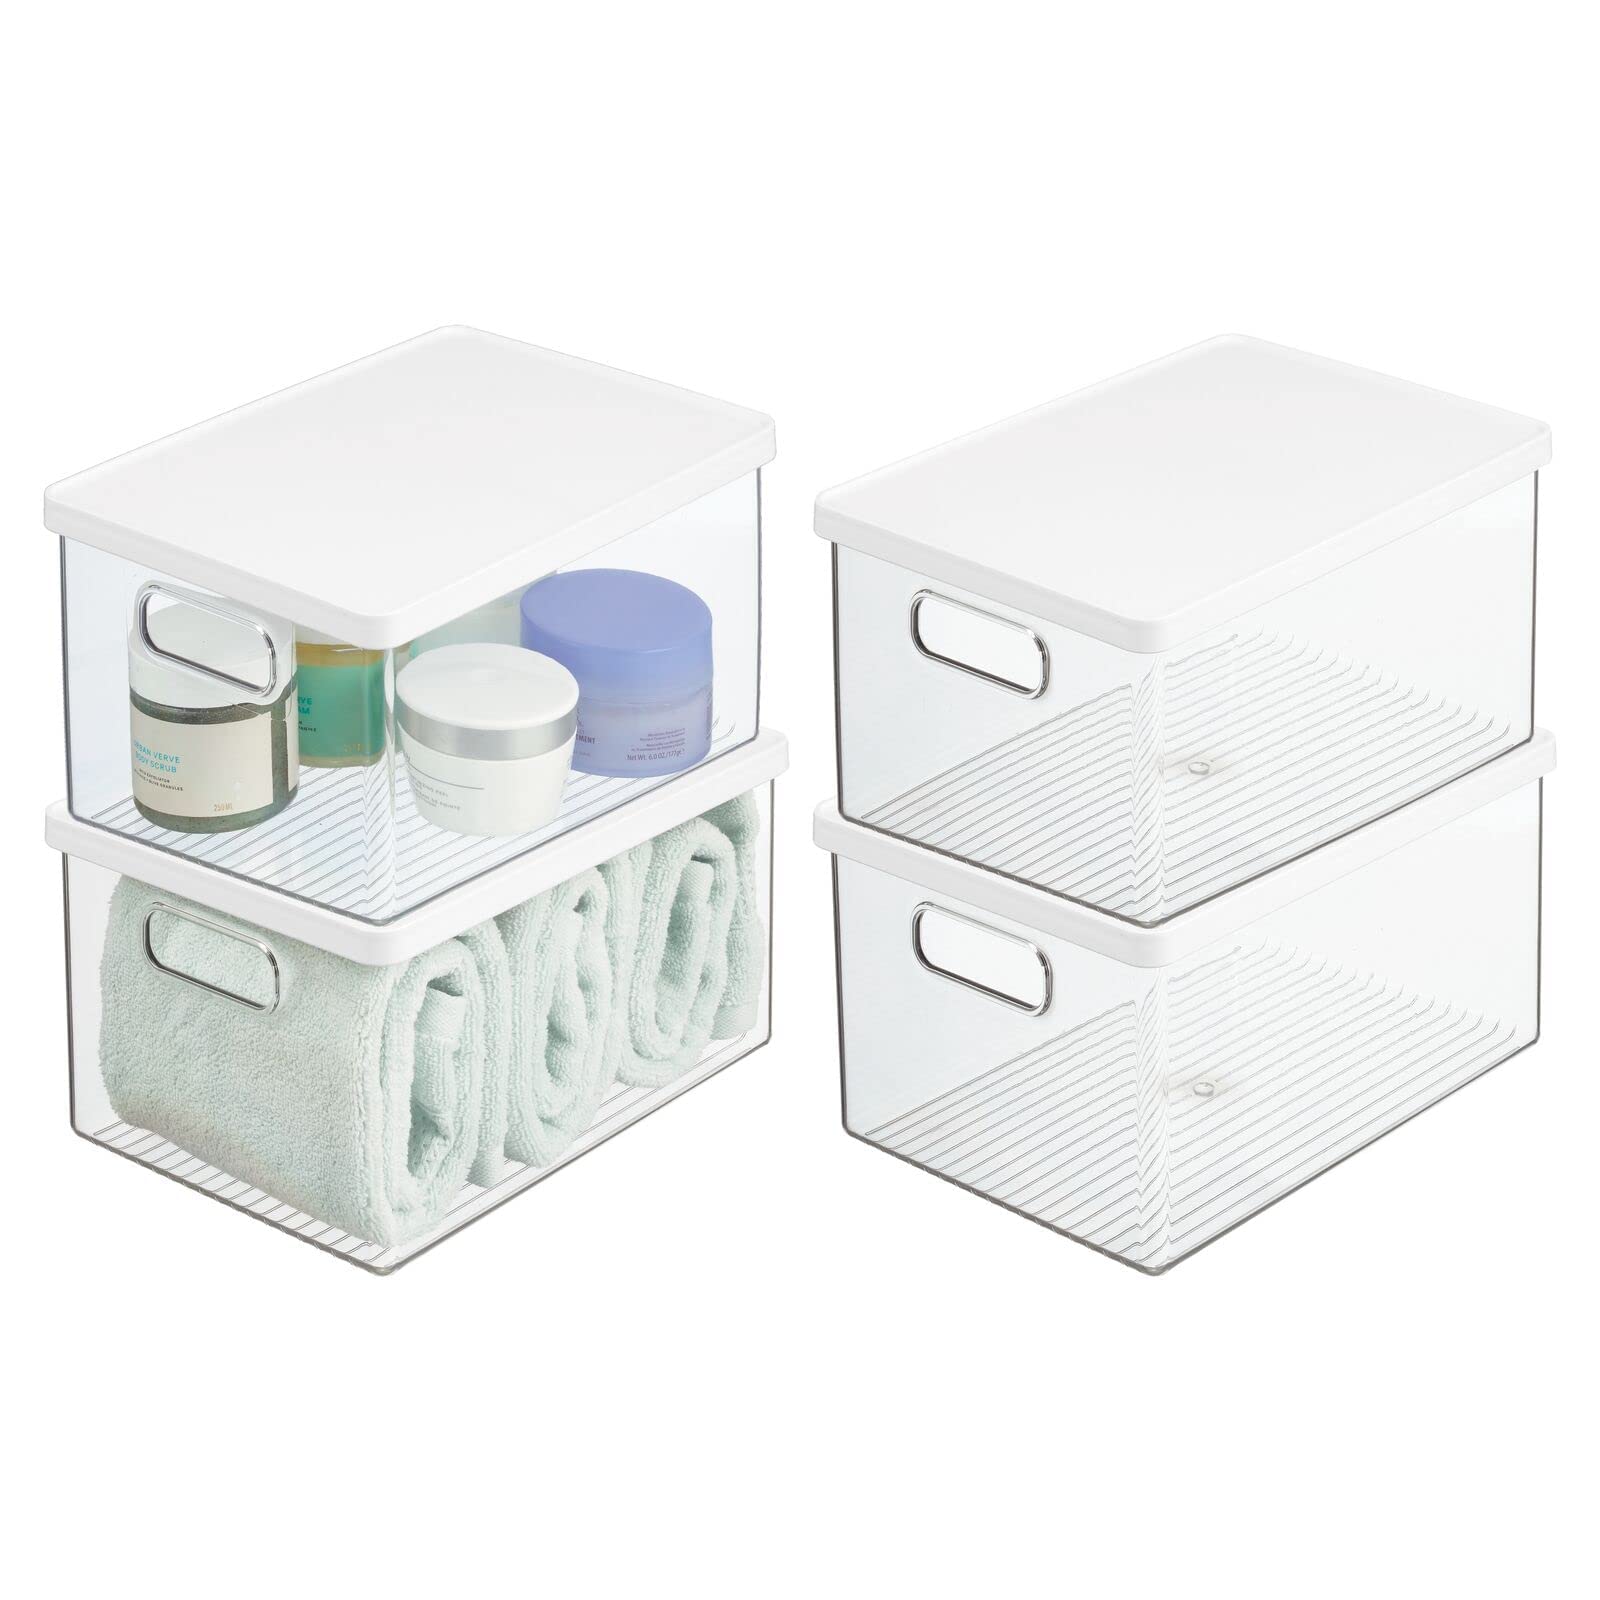 mDesign 4er-Set Badezimmer Organizer – praktische Aufbewahrungsbox aus Kunststoff mit Deckel – stapelbare Bad Box zur Aufbewahrung von Shampoo, Duschgel, Lotionen & Co. – durchsichtig/weiß